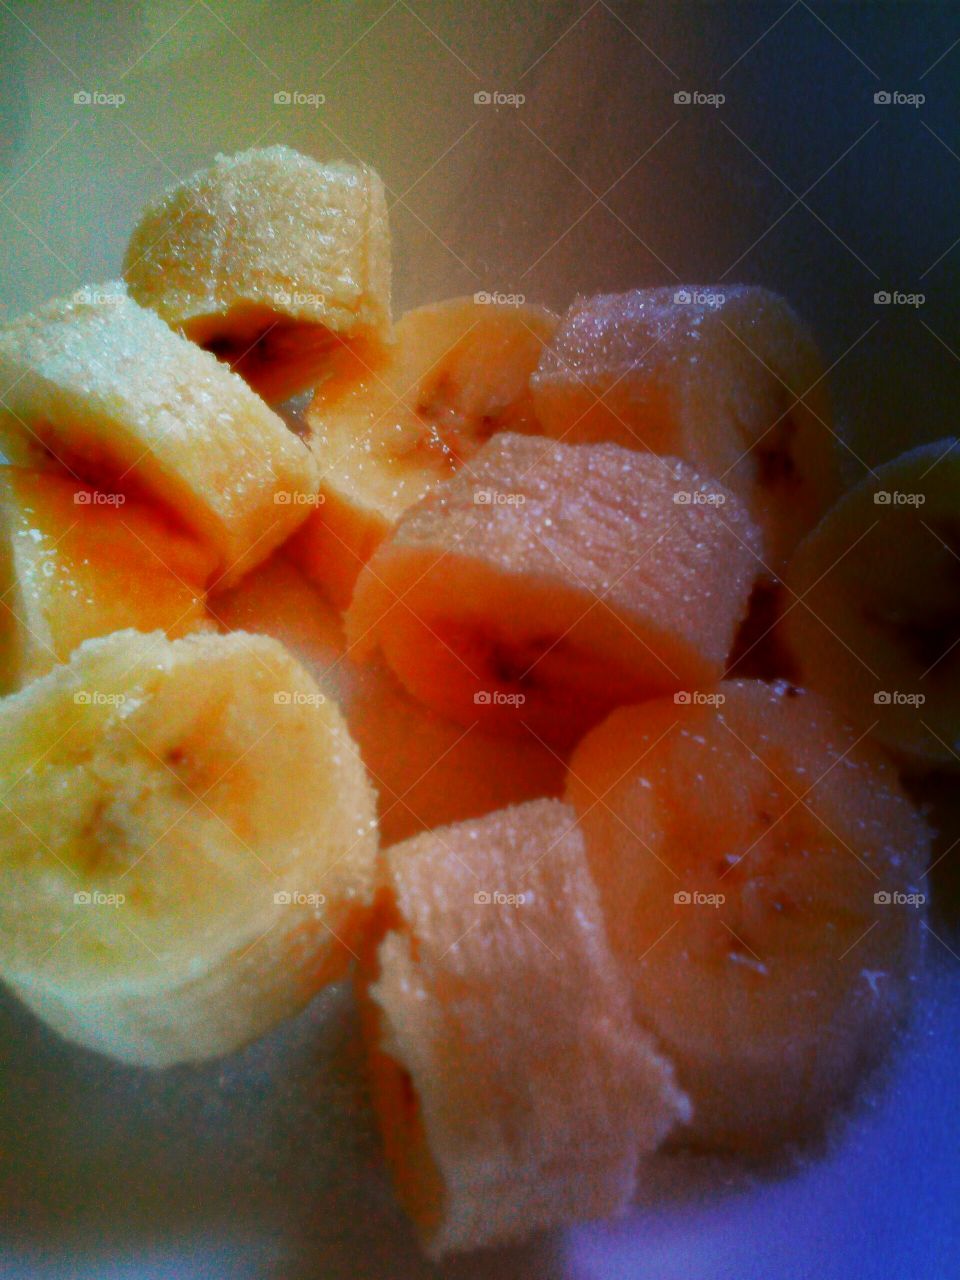 bananas. banana cut up with sugar